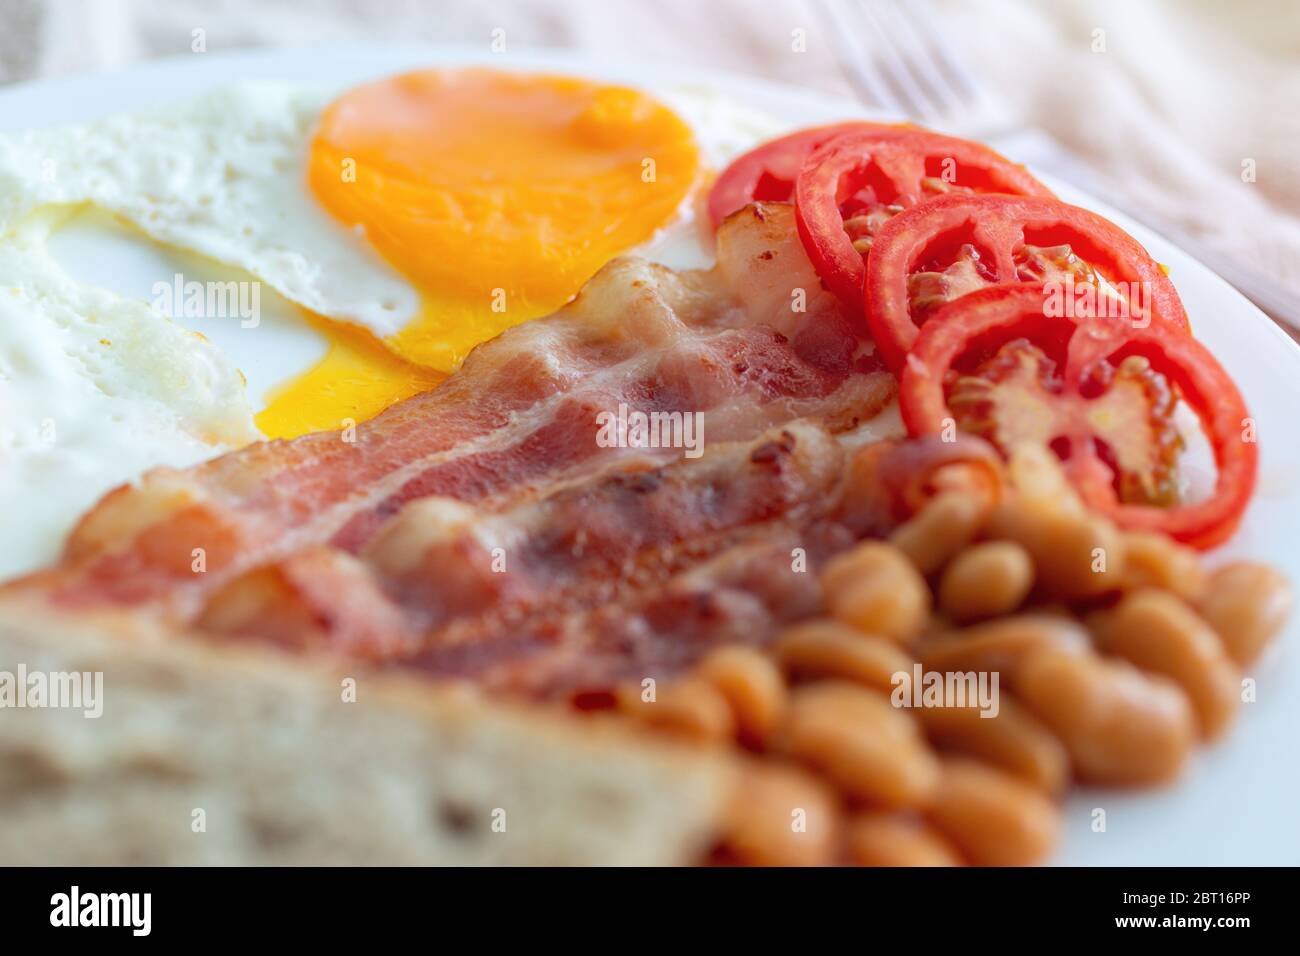 Primo piano della colazione inglese tradizionale: Uova fritte, pancetta, fagioli, pane tostato e pomodoro su un piatto. Foto Stock